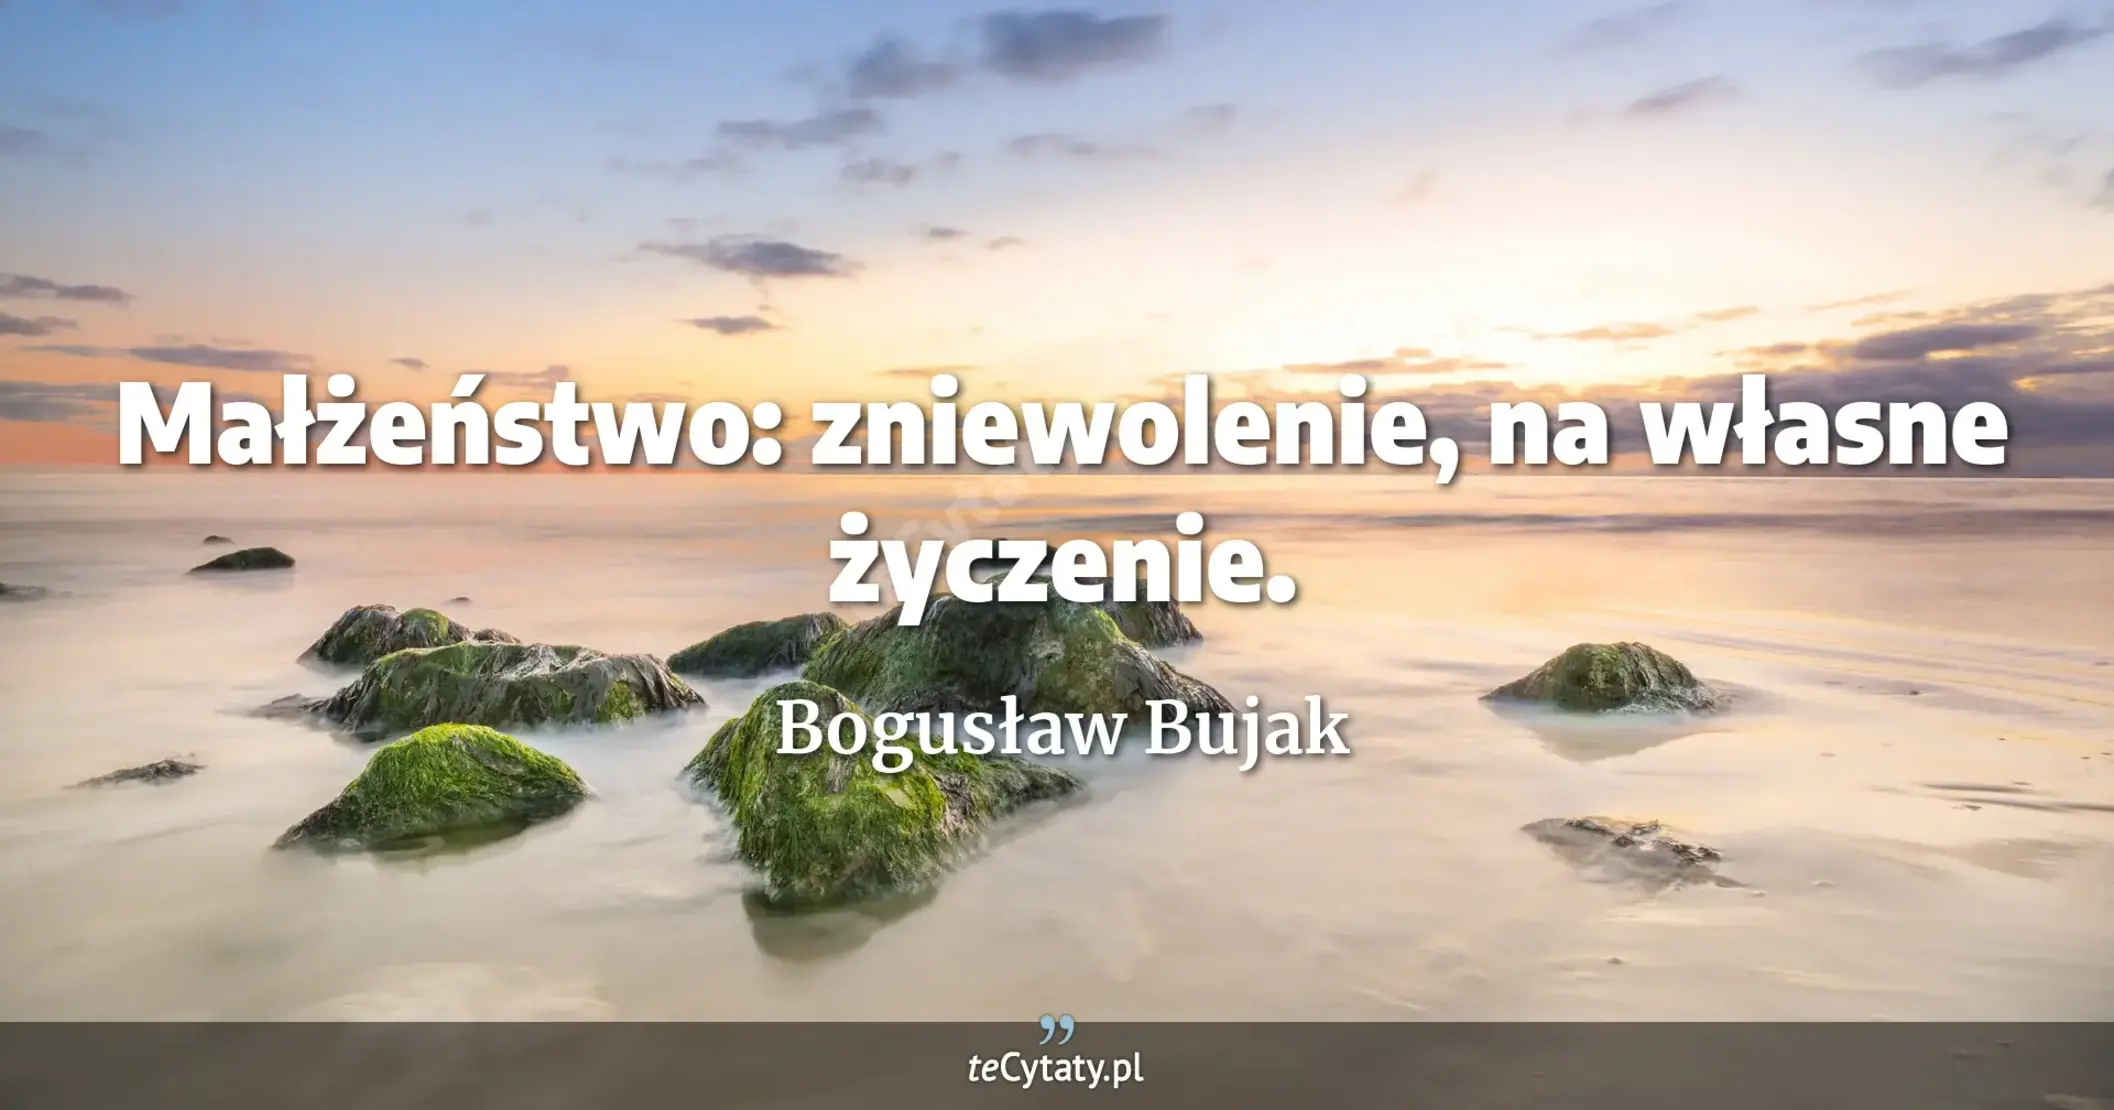 Małżeństwo: zniewolenie, na własne życzenie. - Bogusław Bujak